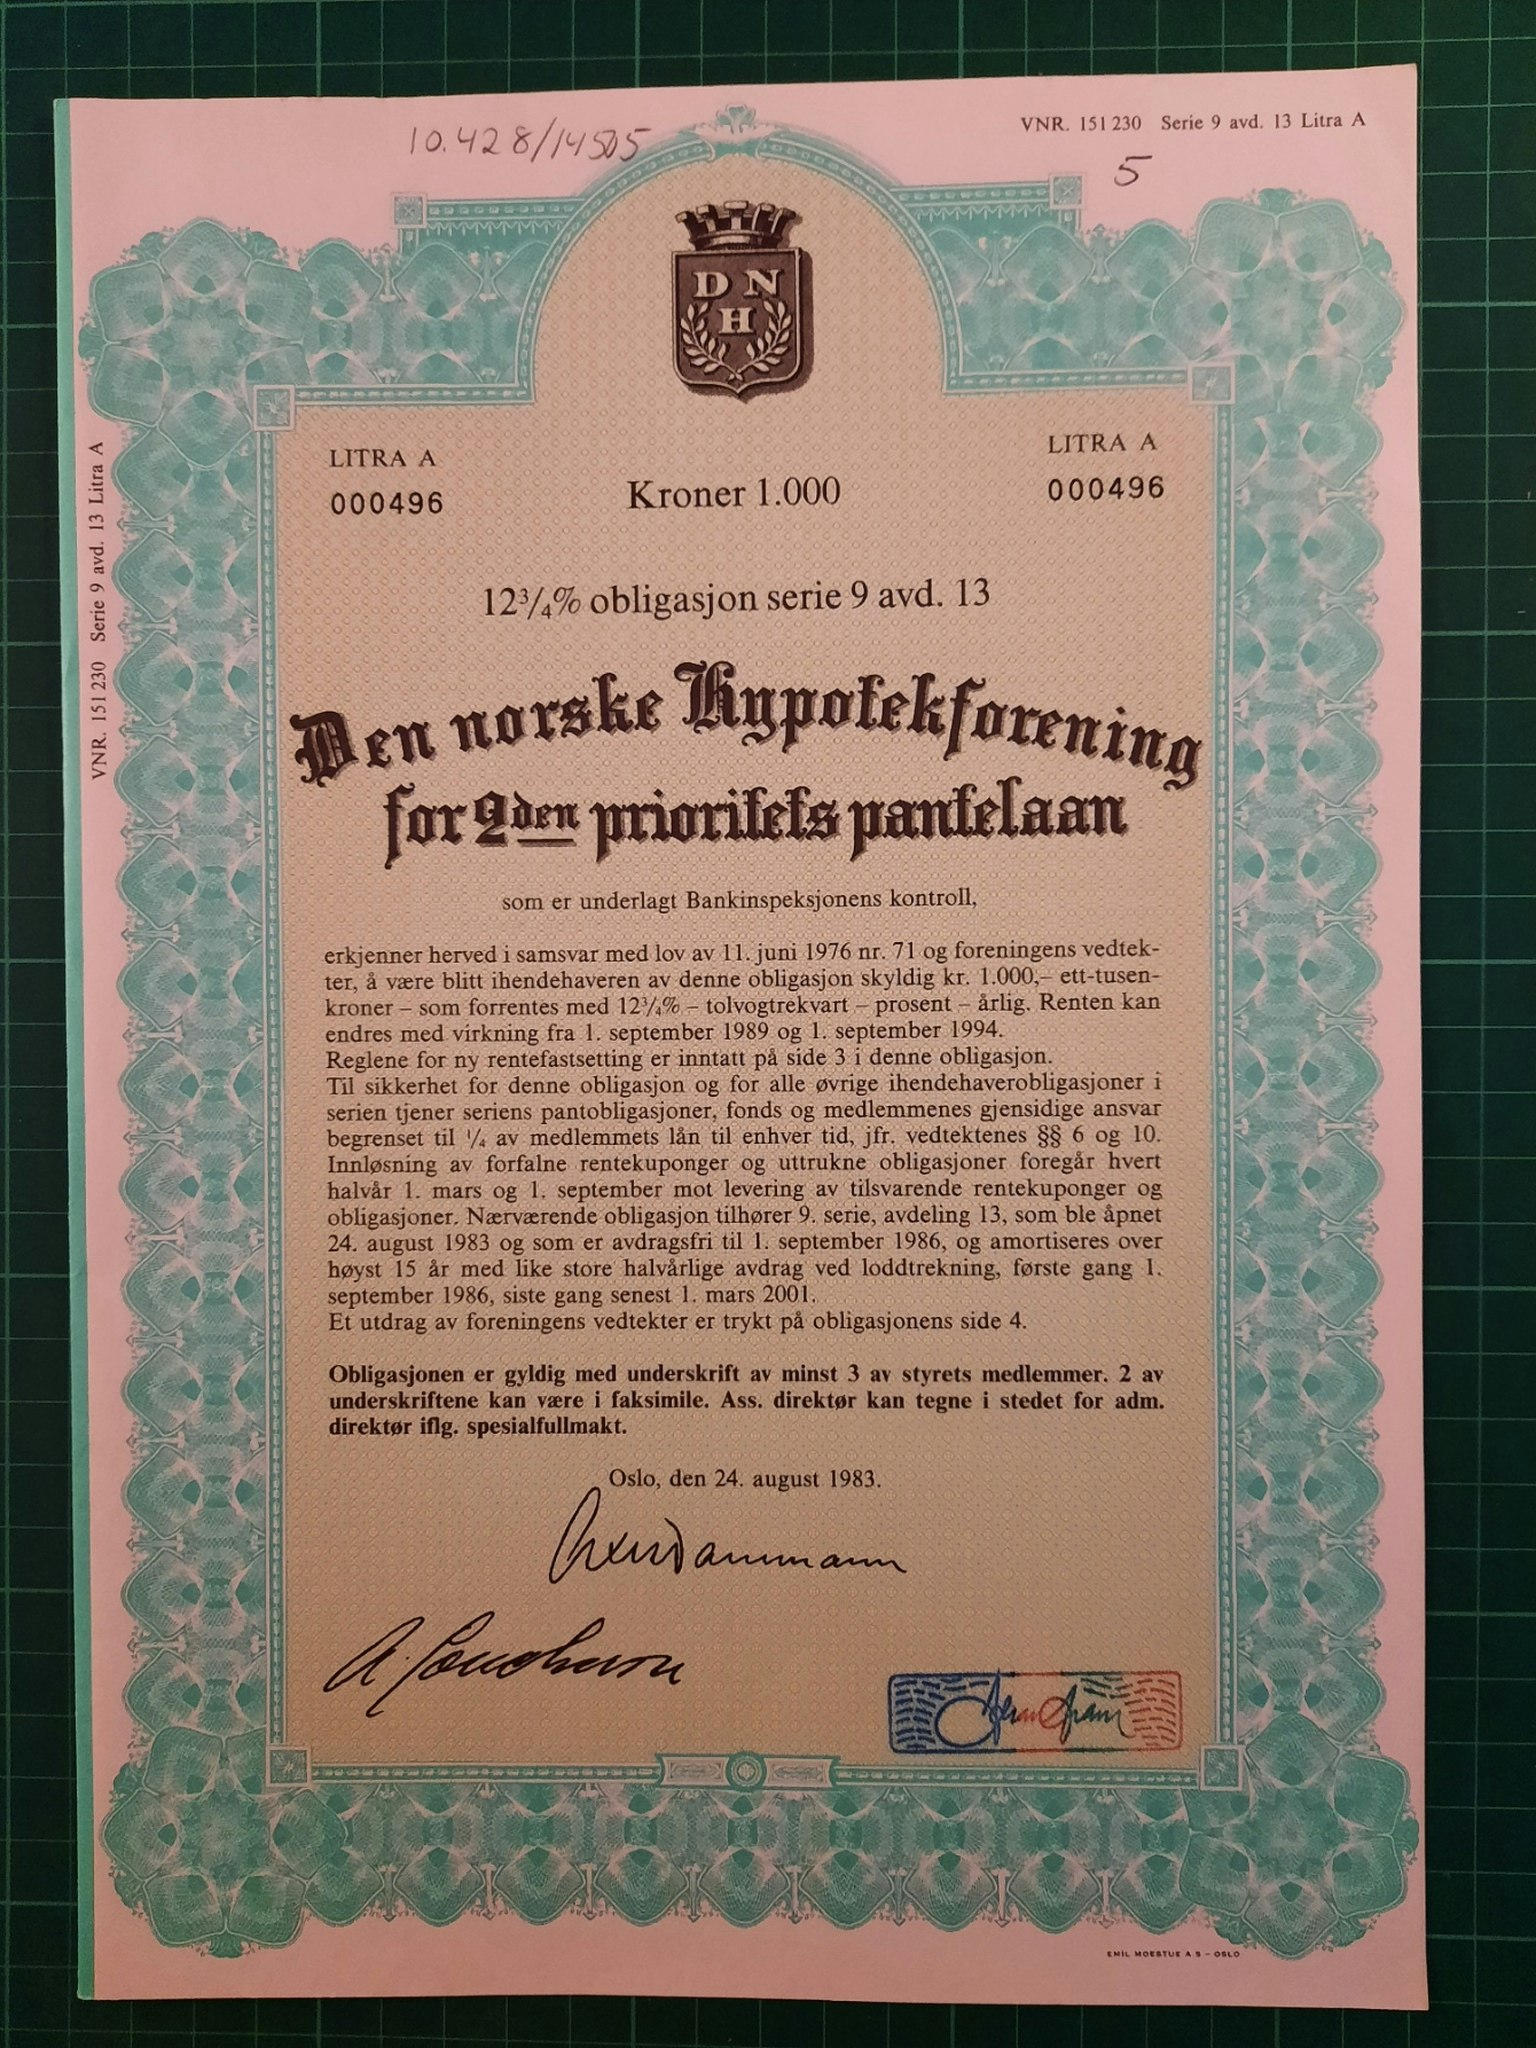 Obligasjon Den Norske hypotekforening 1983 1.000,-